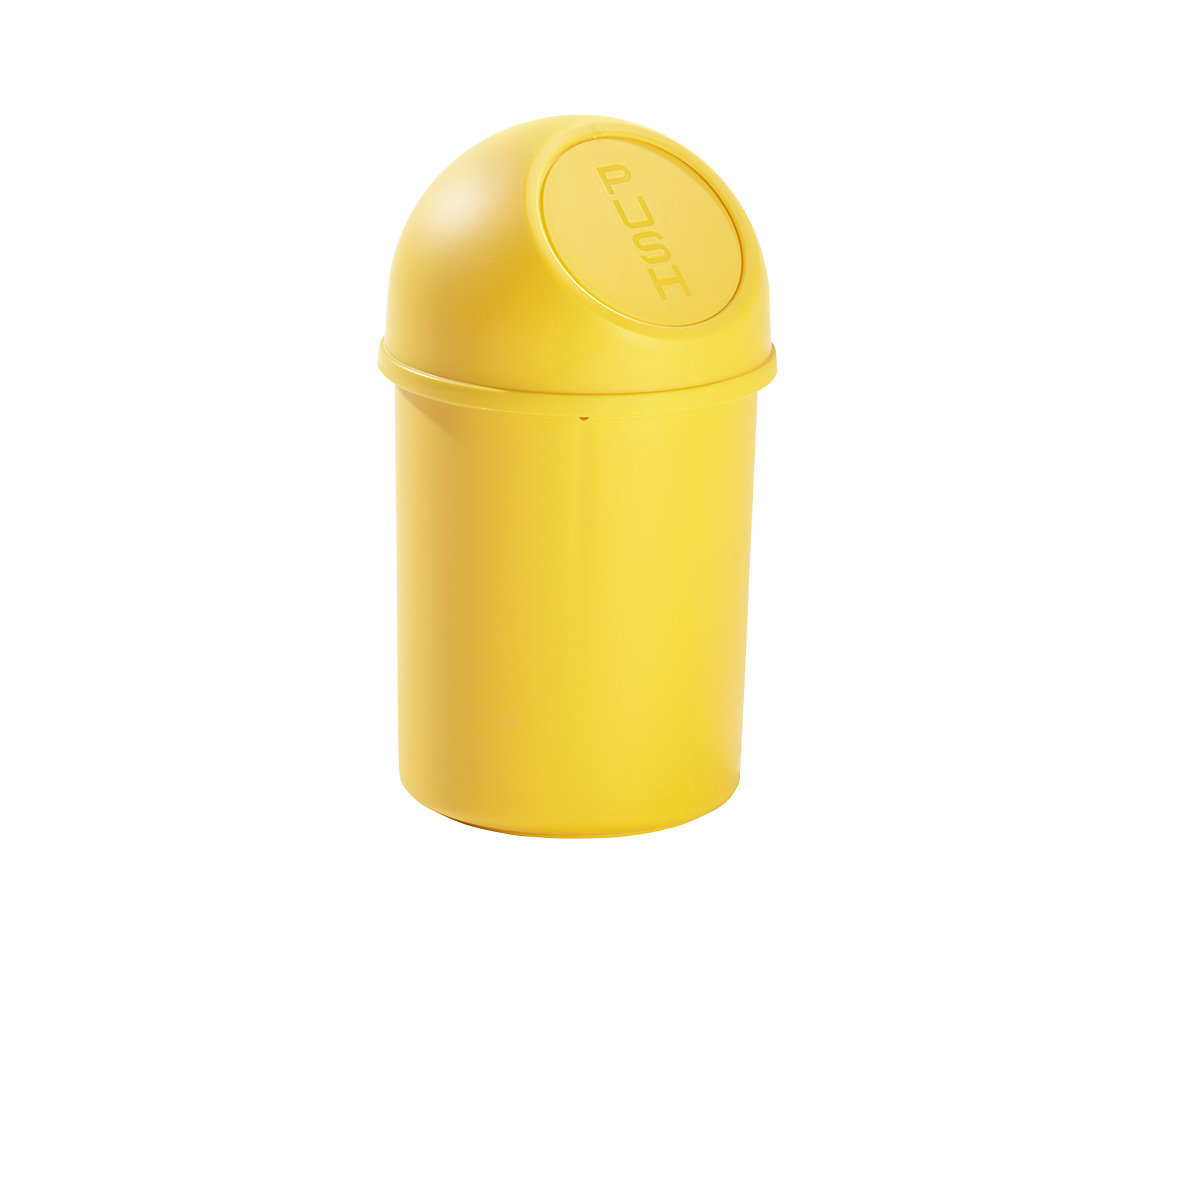 helit – Samozavírací nádoba na odpadky z plastu, objem 6 l, v x Ø 375 x 216 mm, žlutá, bal.j. 6 ks